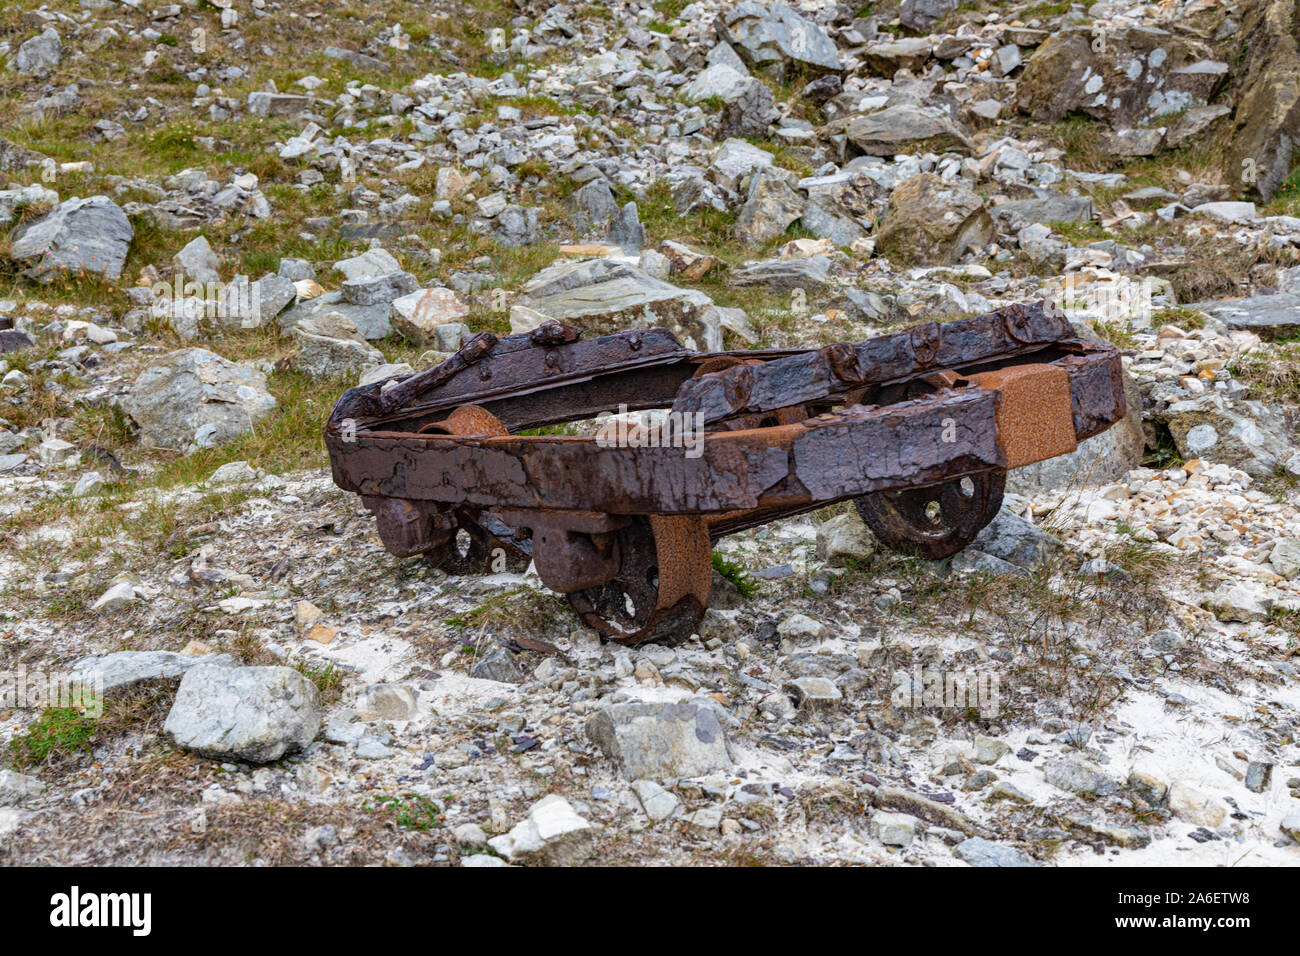 Rusty old mines et carrières équipement sur la montagne Muckish, comté de Donegal, Irlande Banque D'Images